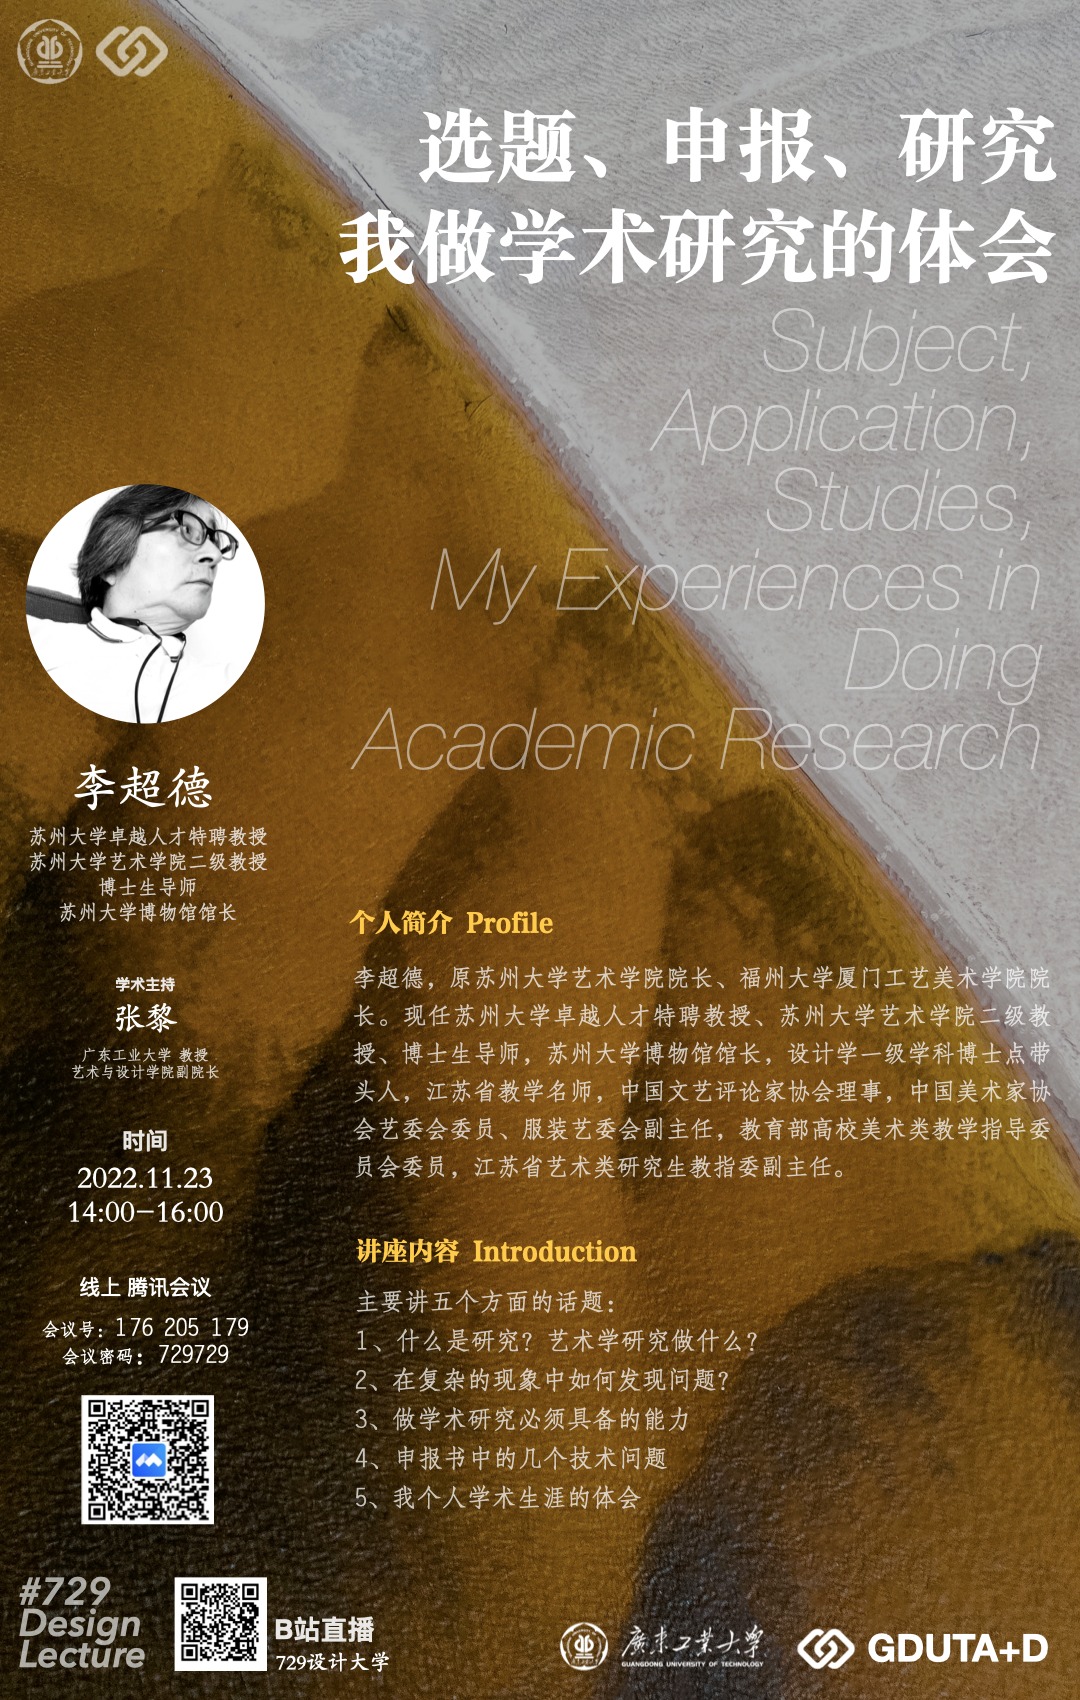 729讲座预告：李超德丨选题、申报、研究：我做学术研究的体会